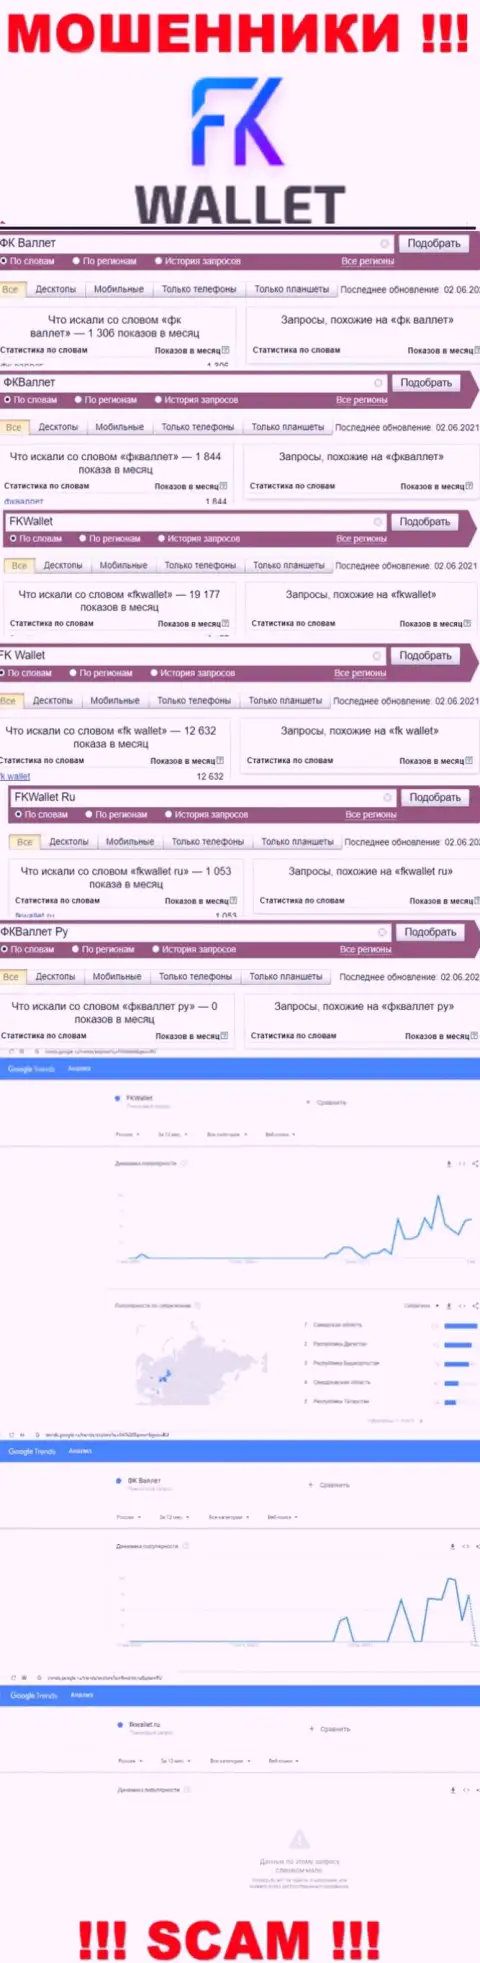 Скриншот статистики запросов по неправомерно действующей организации ФКВаллет